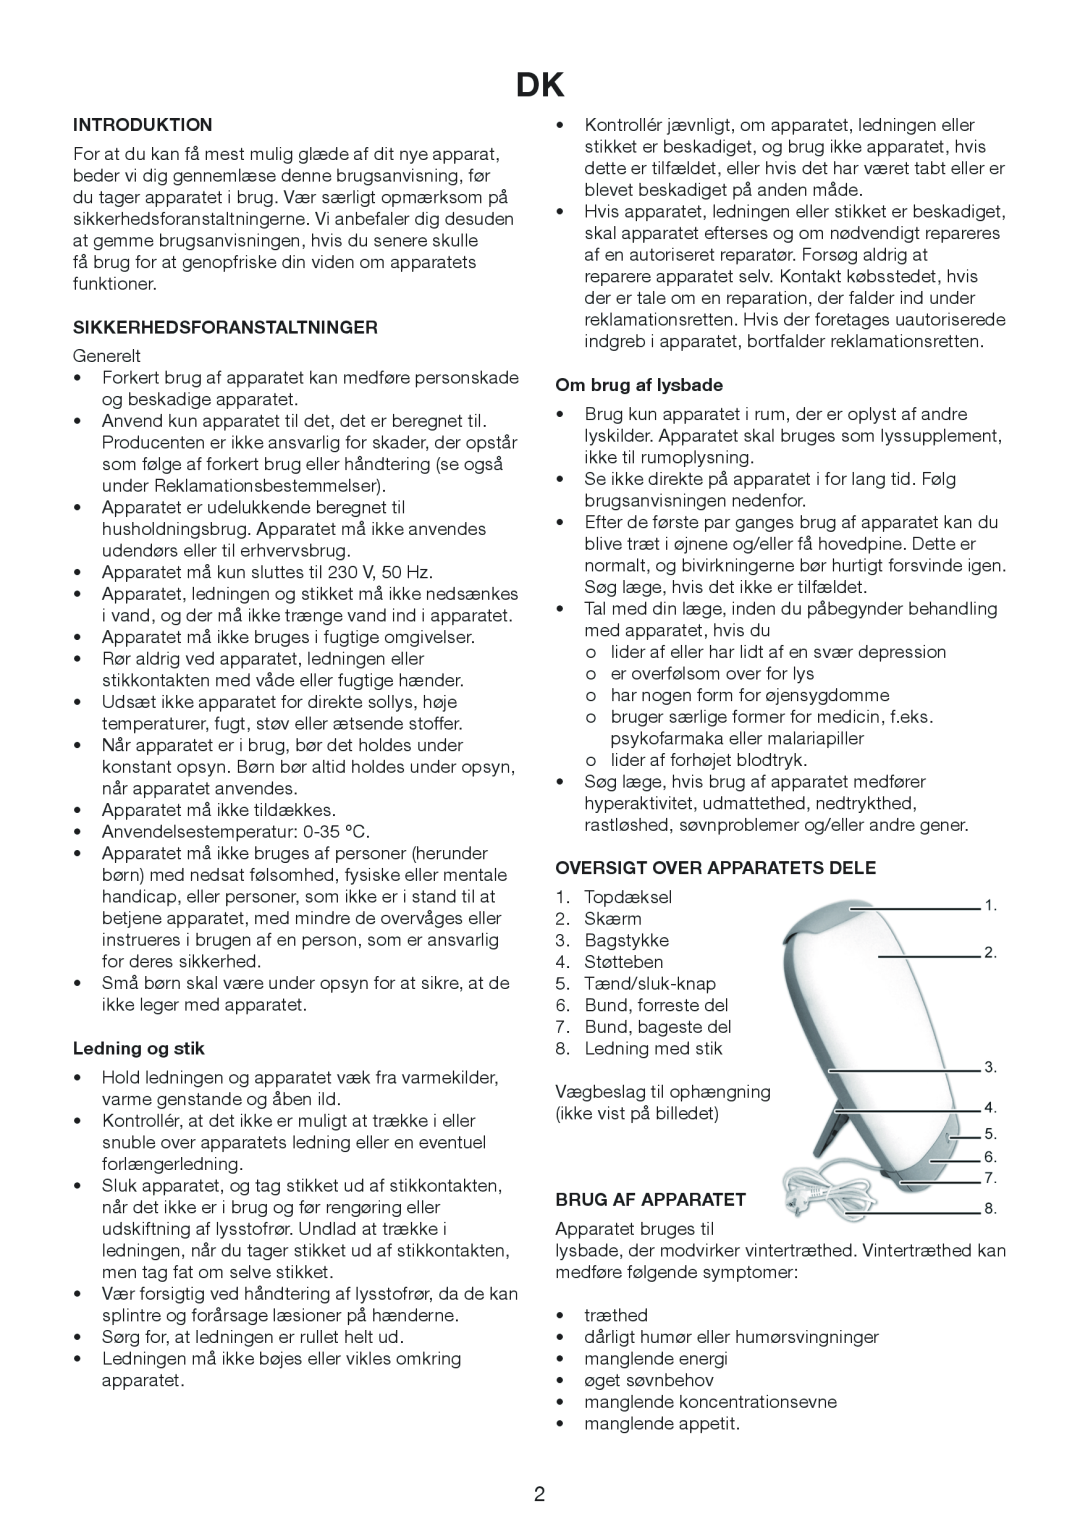 Melissa 637-006 manual Introduktion, Sikkerhedsforanstaltninger, Ledning og stik, Om brug af lysbade, Brug Af Apparatet 